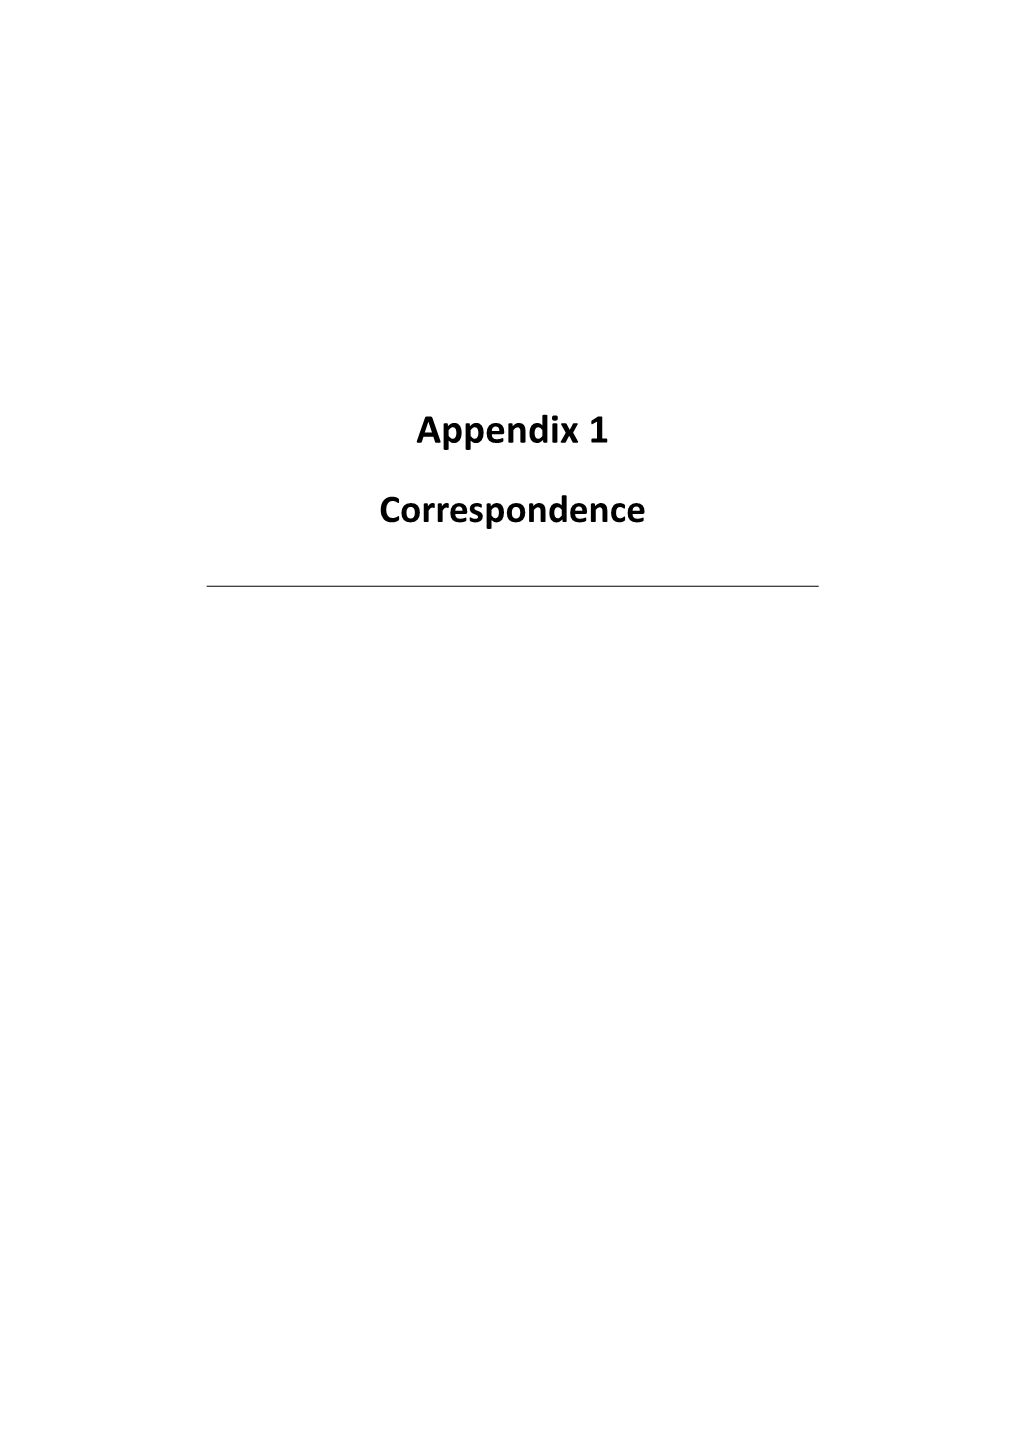 Appendix 1 Correspondence